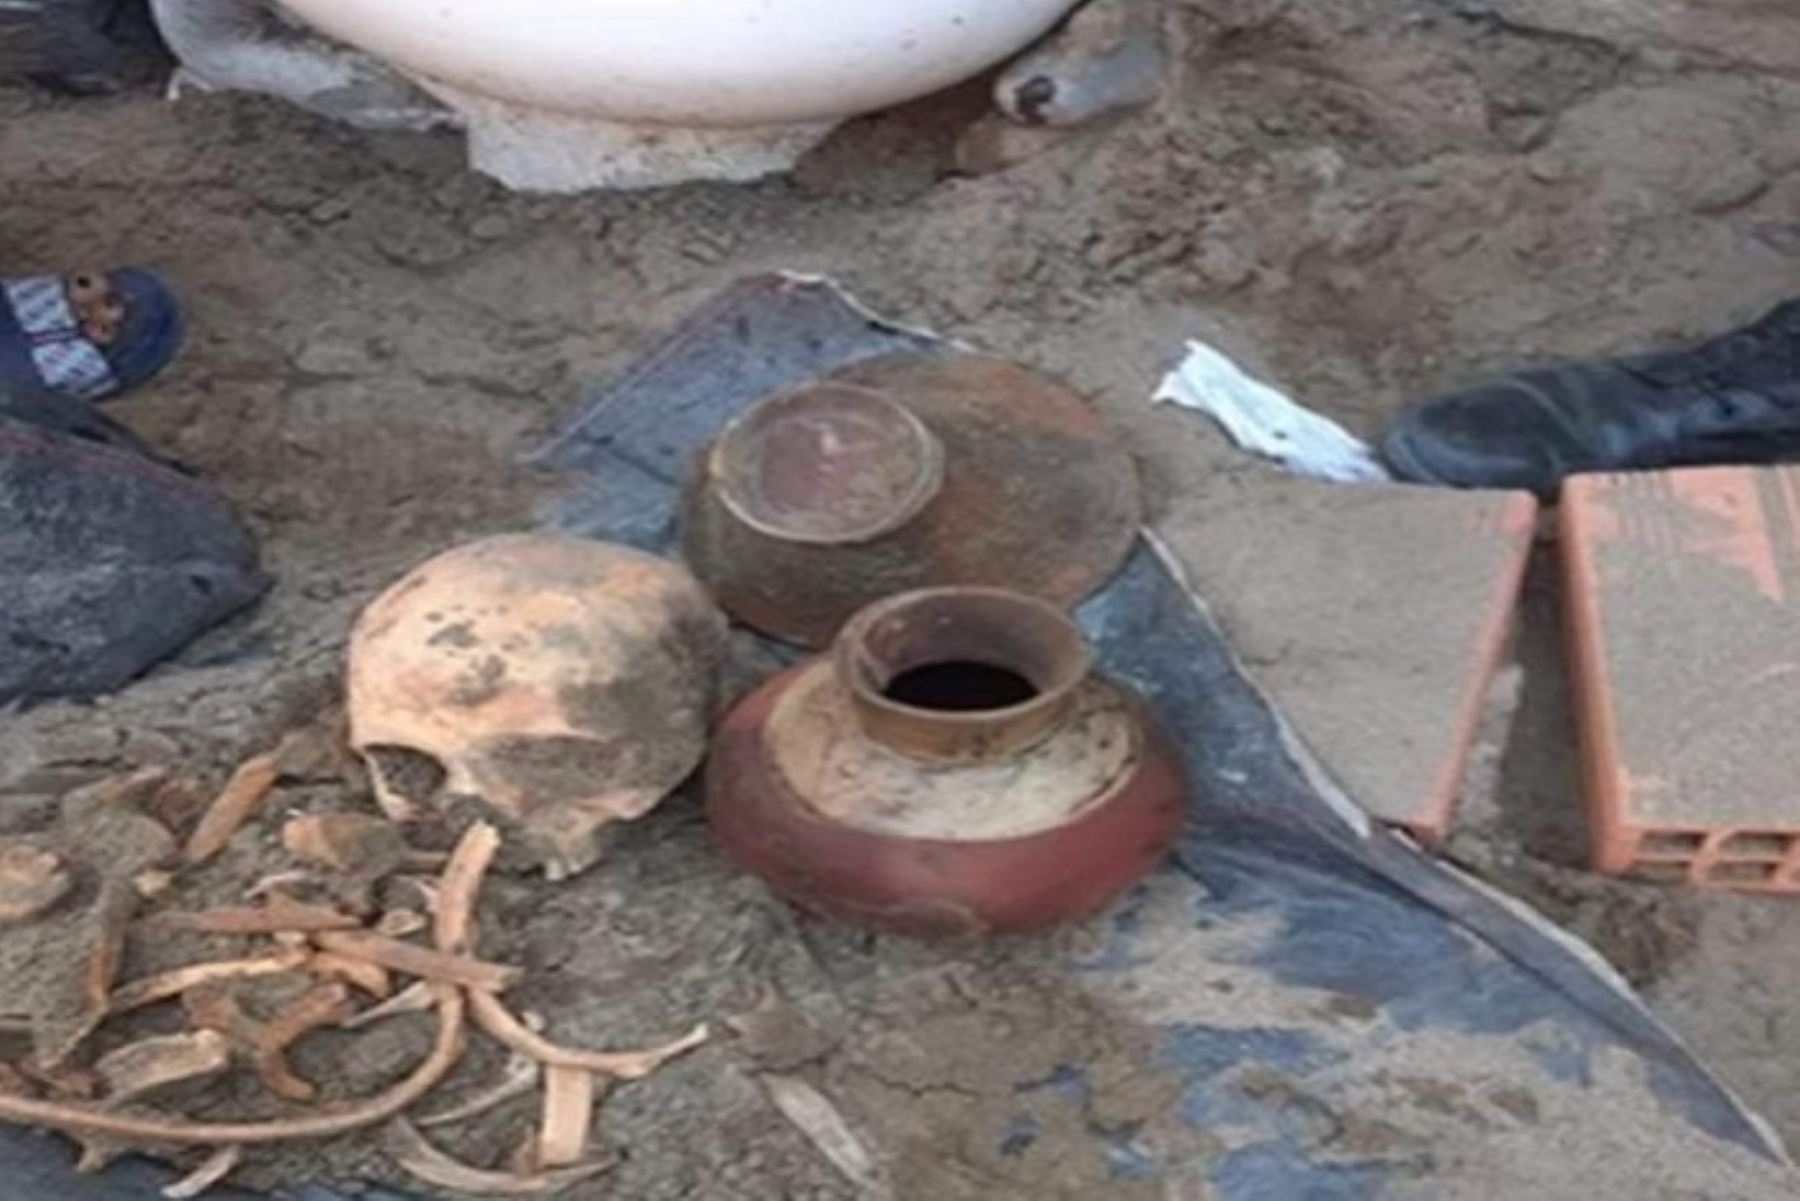 Los vecinos dieron aviso a los representantes del Ministerio de Cultura a fin de que puedan asumir la custodia de estos restos y realicen las indagaciones del caso.